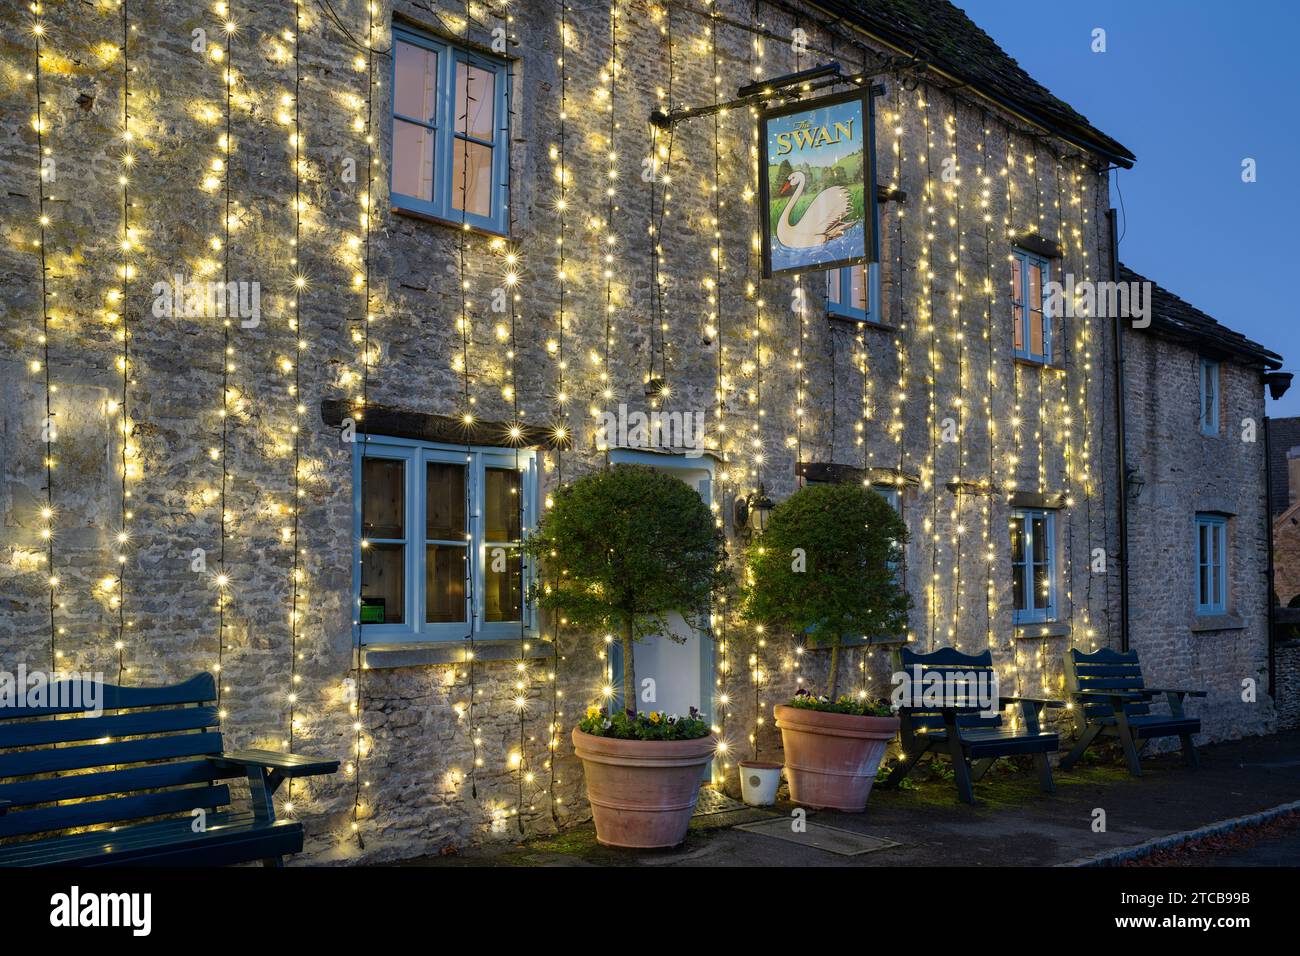 Lumières de Noël sur le pub Swan au crépuscule. Southrop. Cotswolds, Gloucestershire, Angleterre Banque D'Images